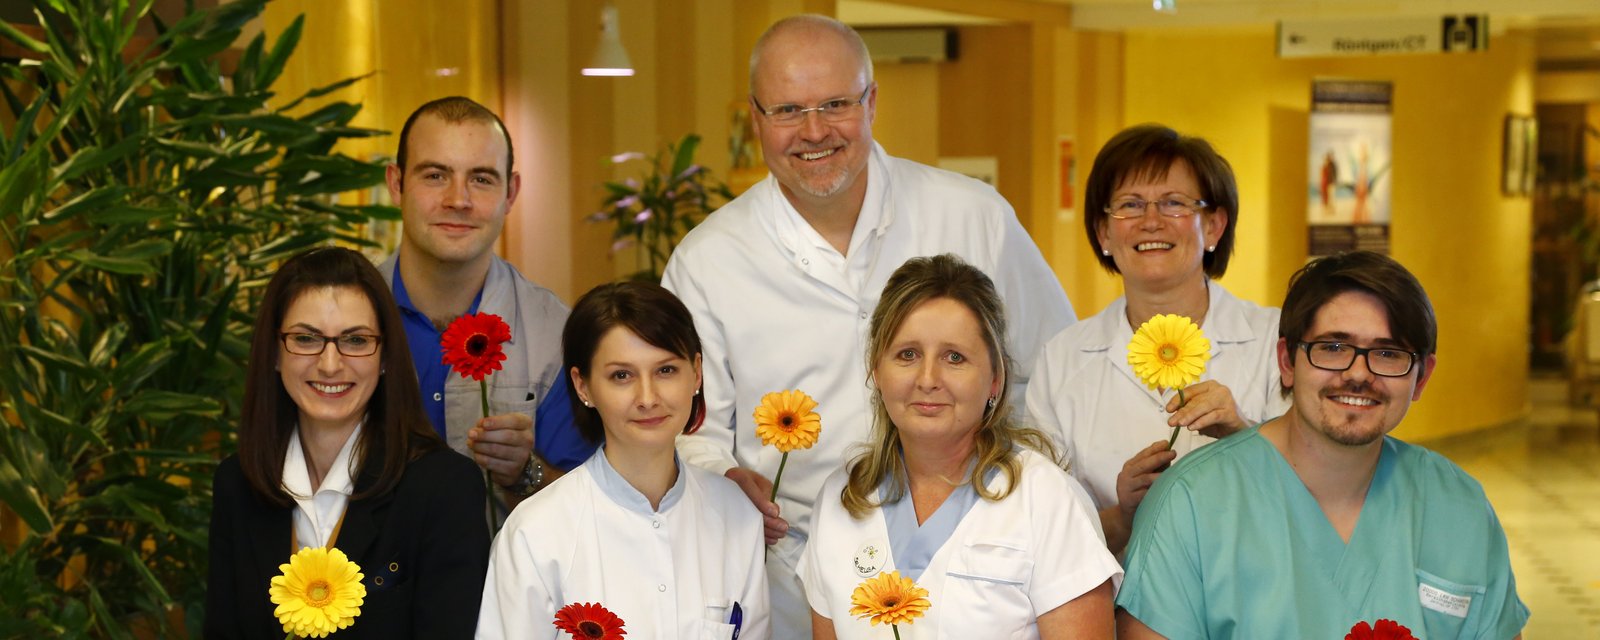 4 Mitarbeiterinnen und 3 Mitarbeiter mit Blumen in der Hand